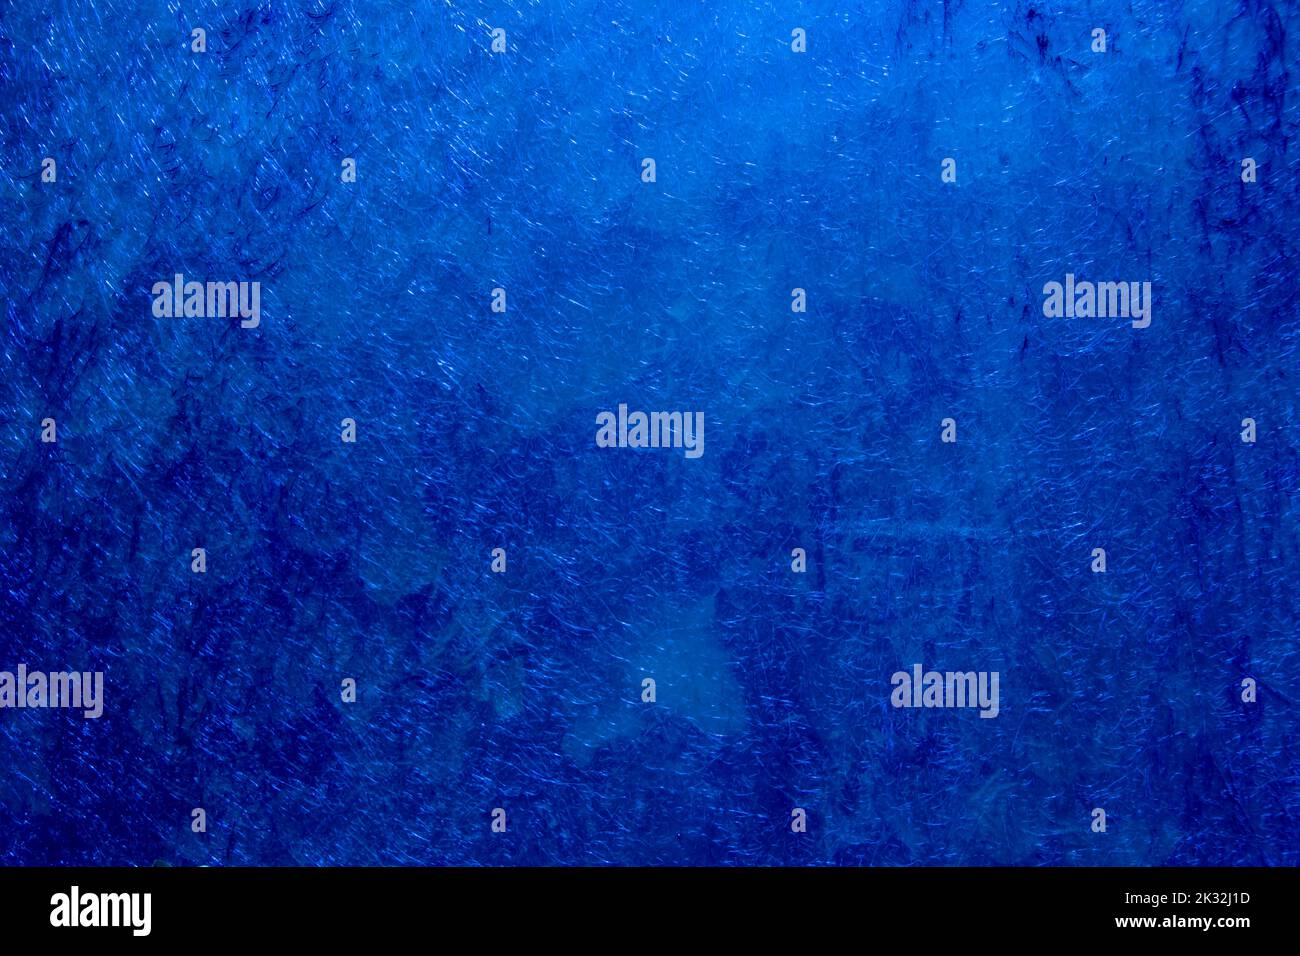 Sfondo di colore blu con texture ondulate di diverse sfumature di blu scuro Foto Stock